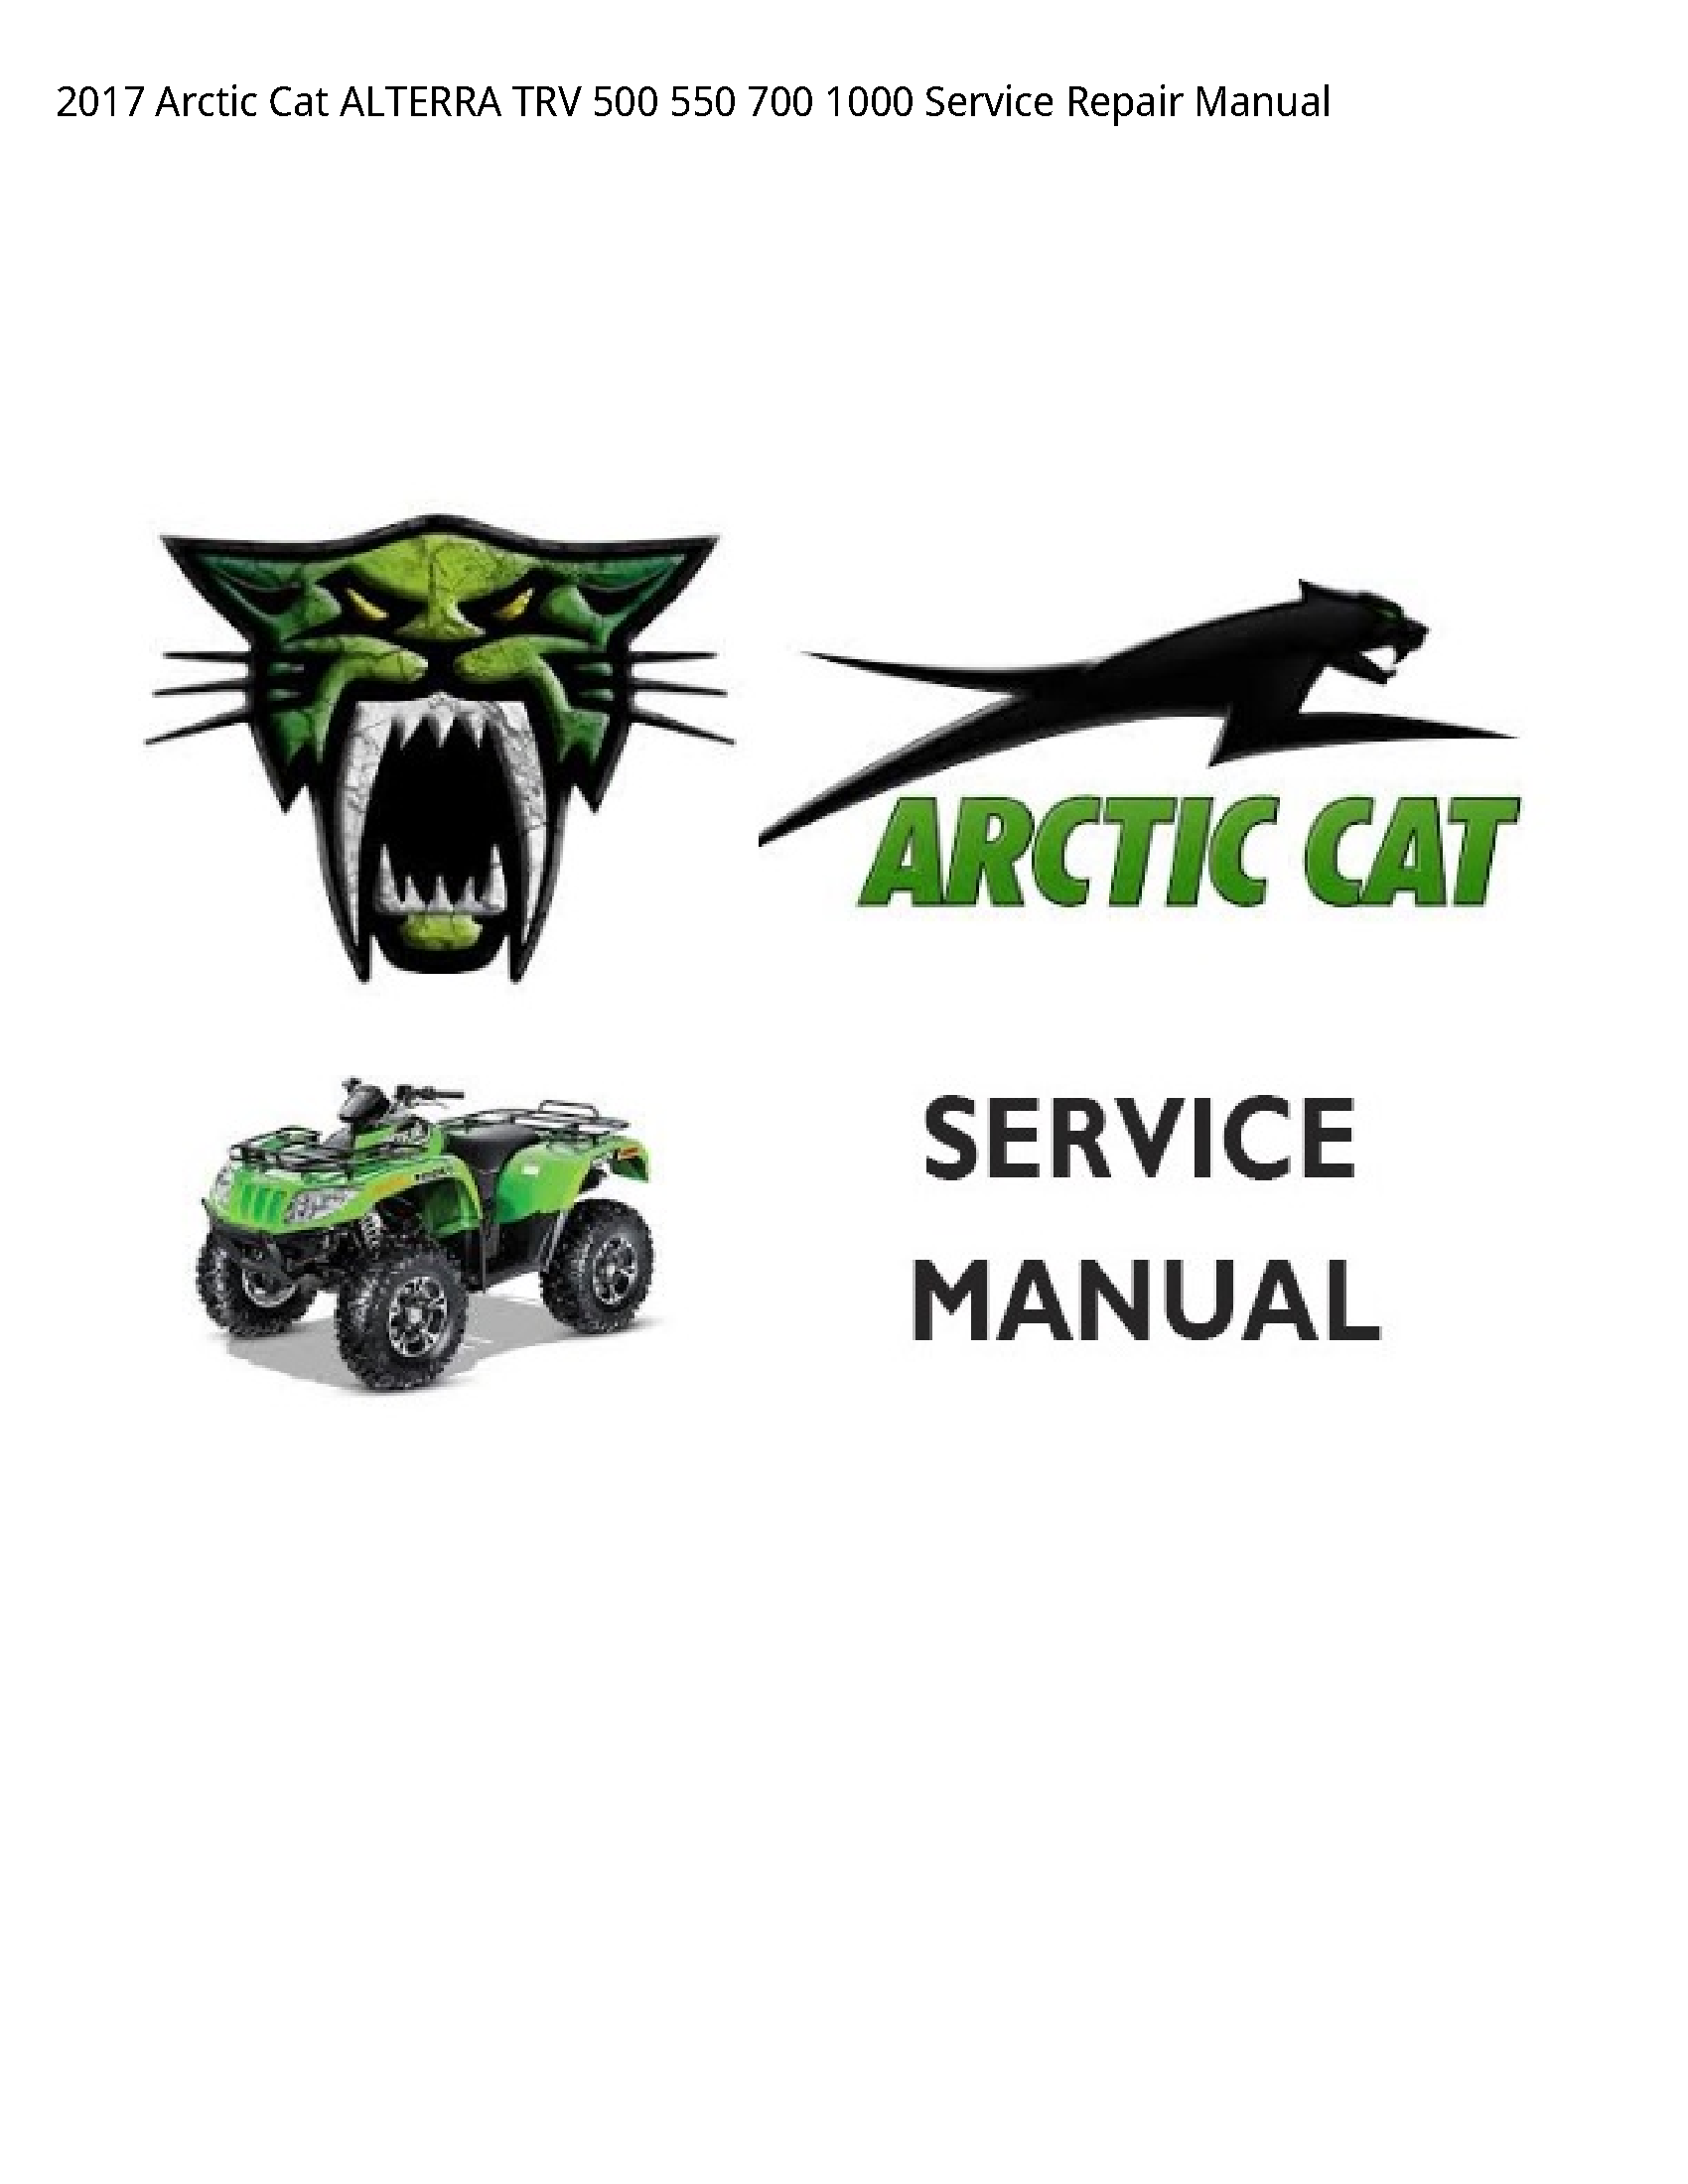 Arctic Cat 500 ALTERRA TRV manual